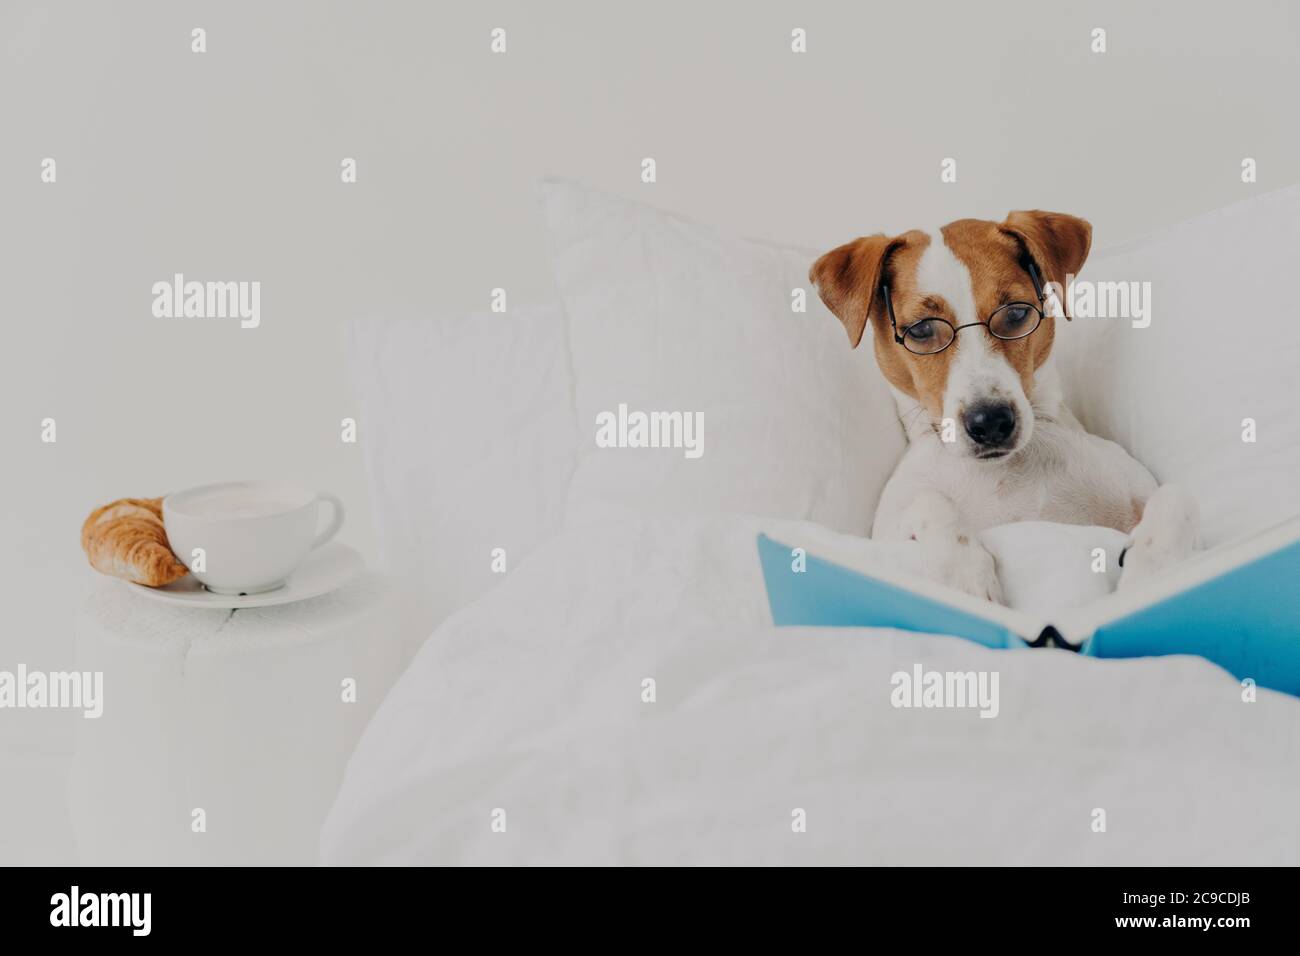 Le chien térier Jack russel est un chien d'origine intelligent qui reste dans un lit confortable et lit un livre comme un homme, porte des spectacles ronds, délicieux petit déjeuner à proximité. Animaux, Banque D'Images